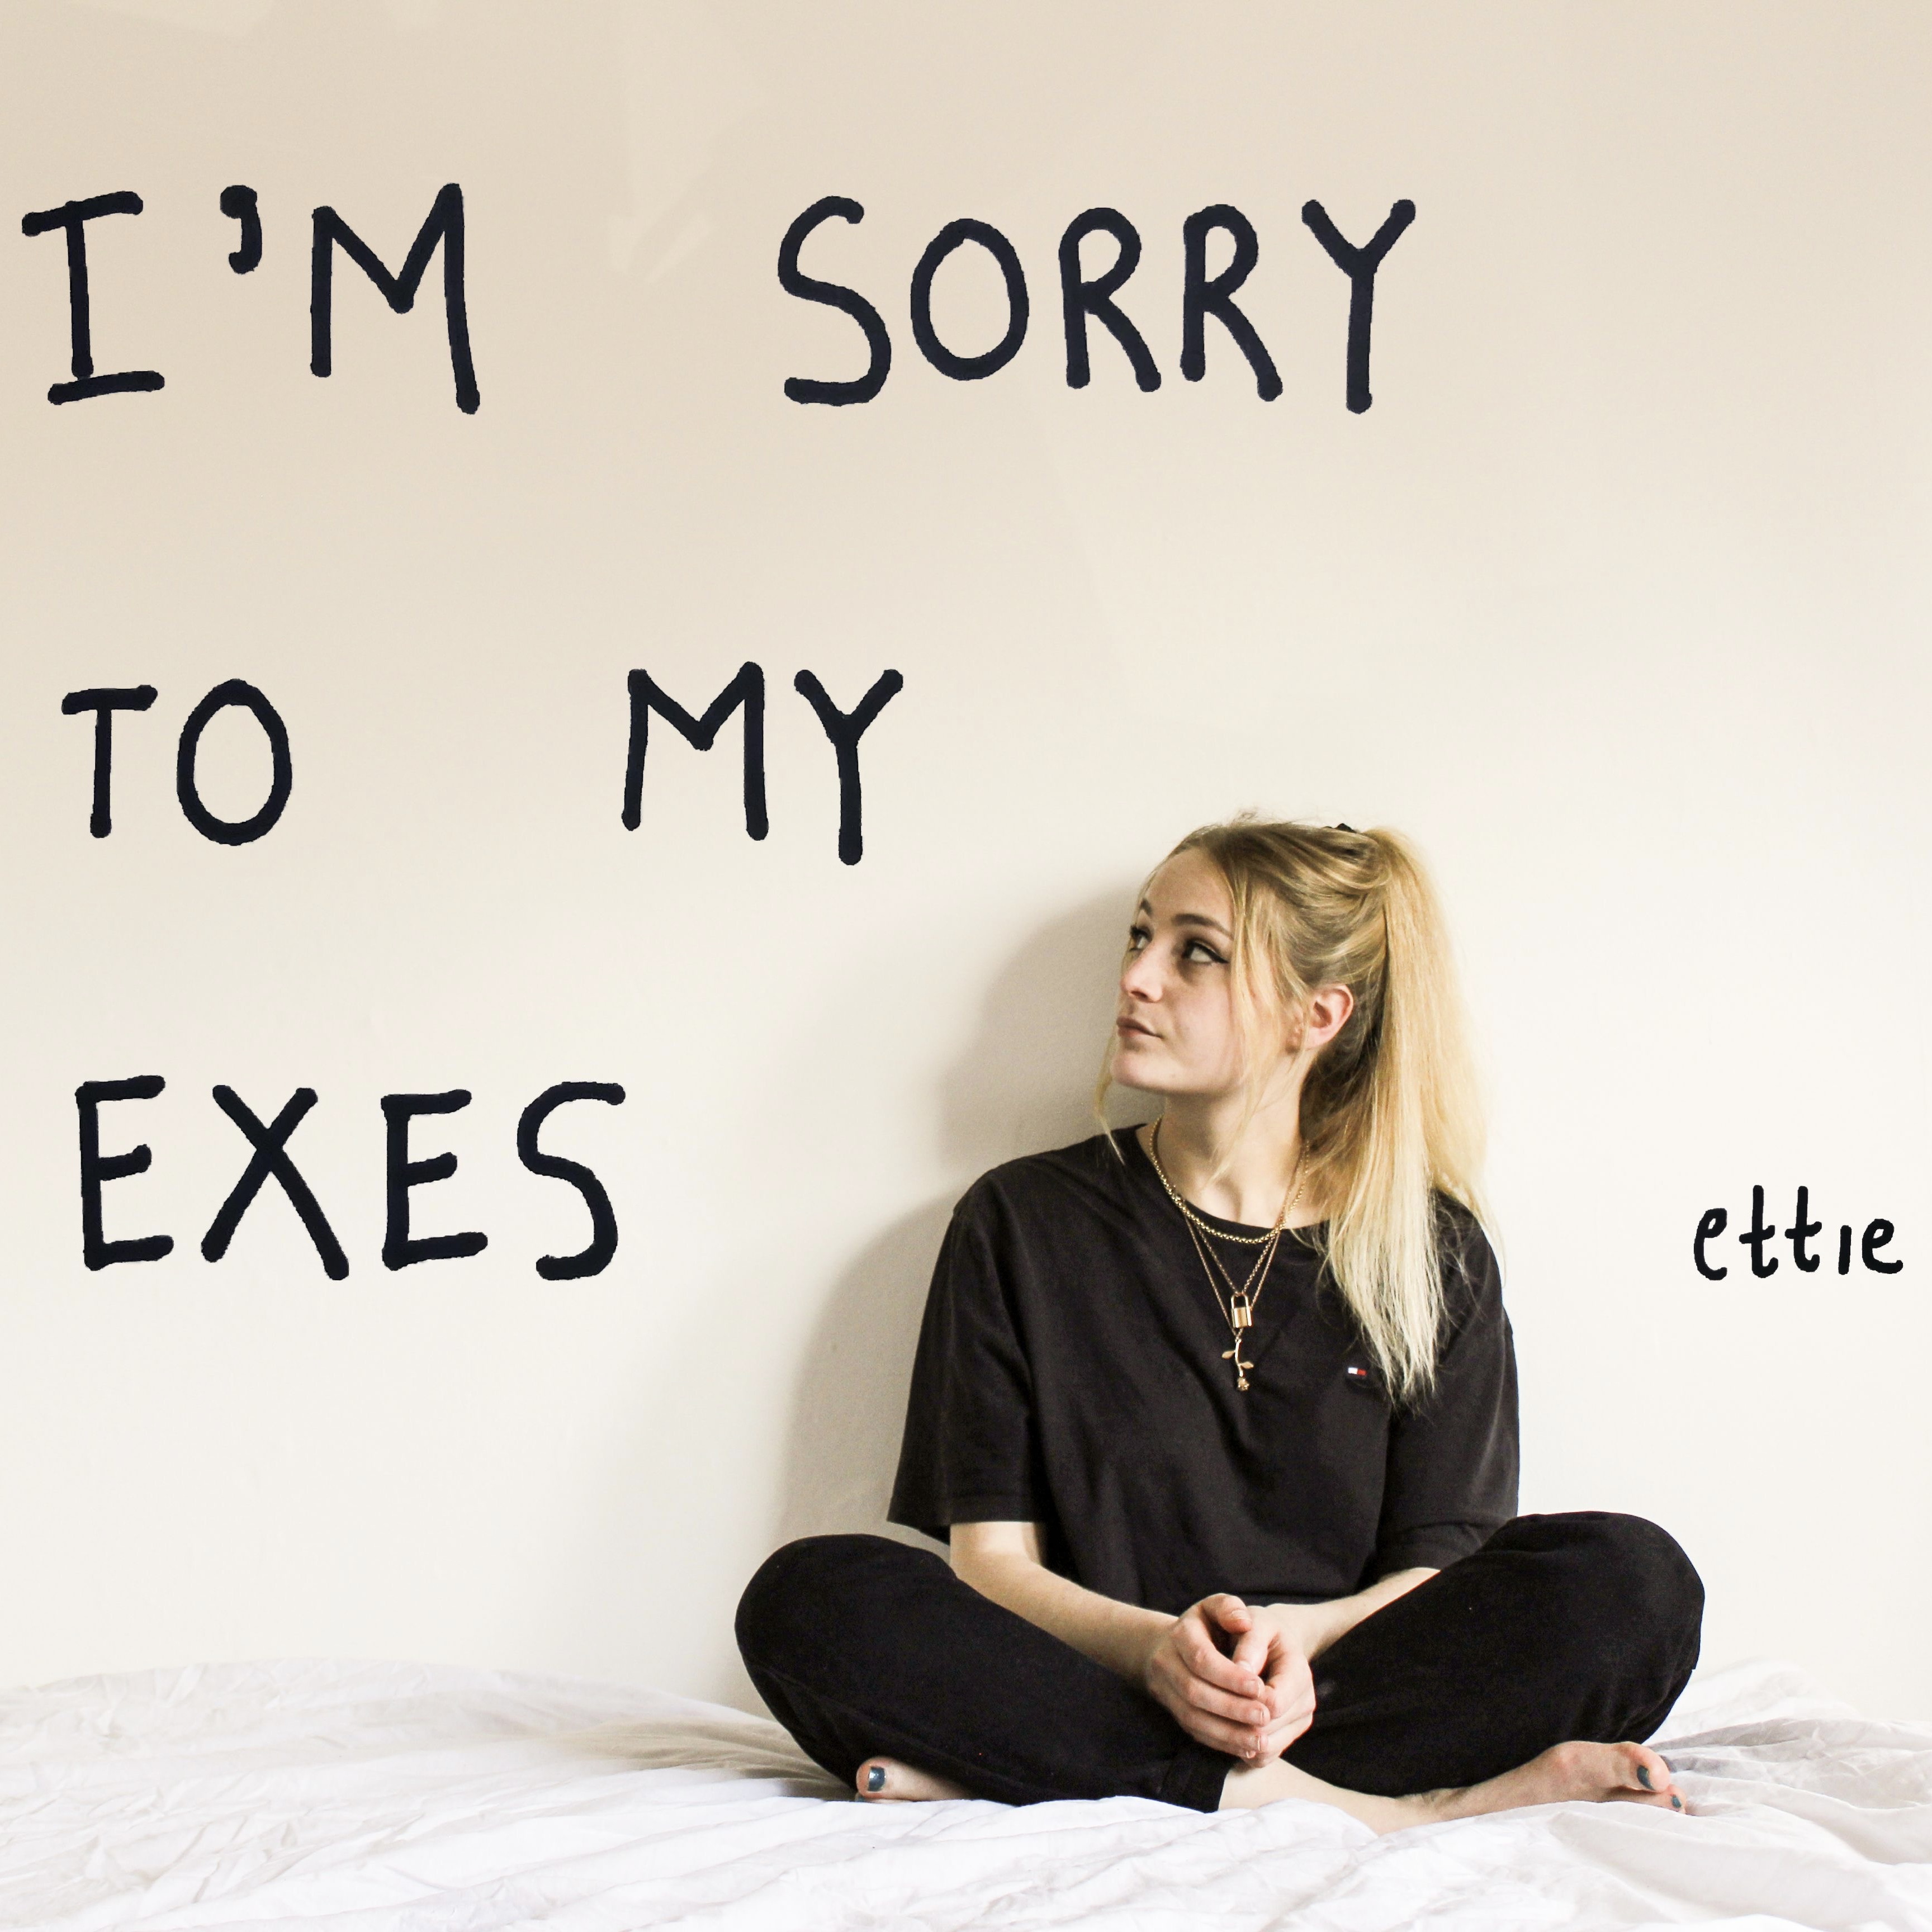 Ettie – “I’m Sorry to my exes”